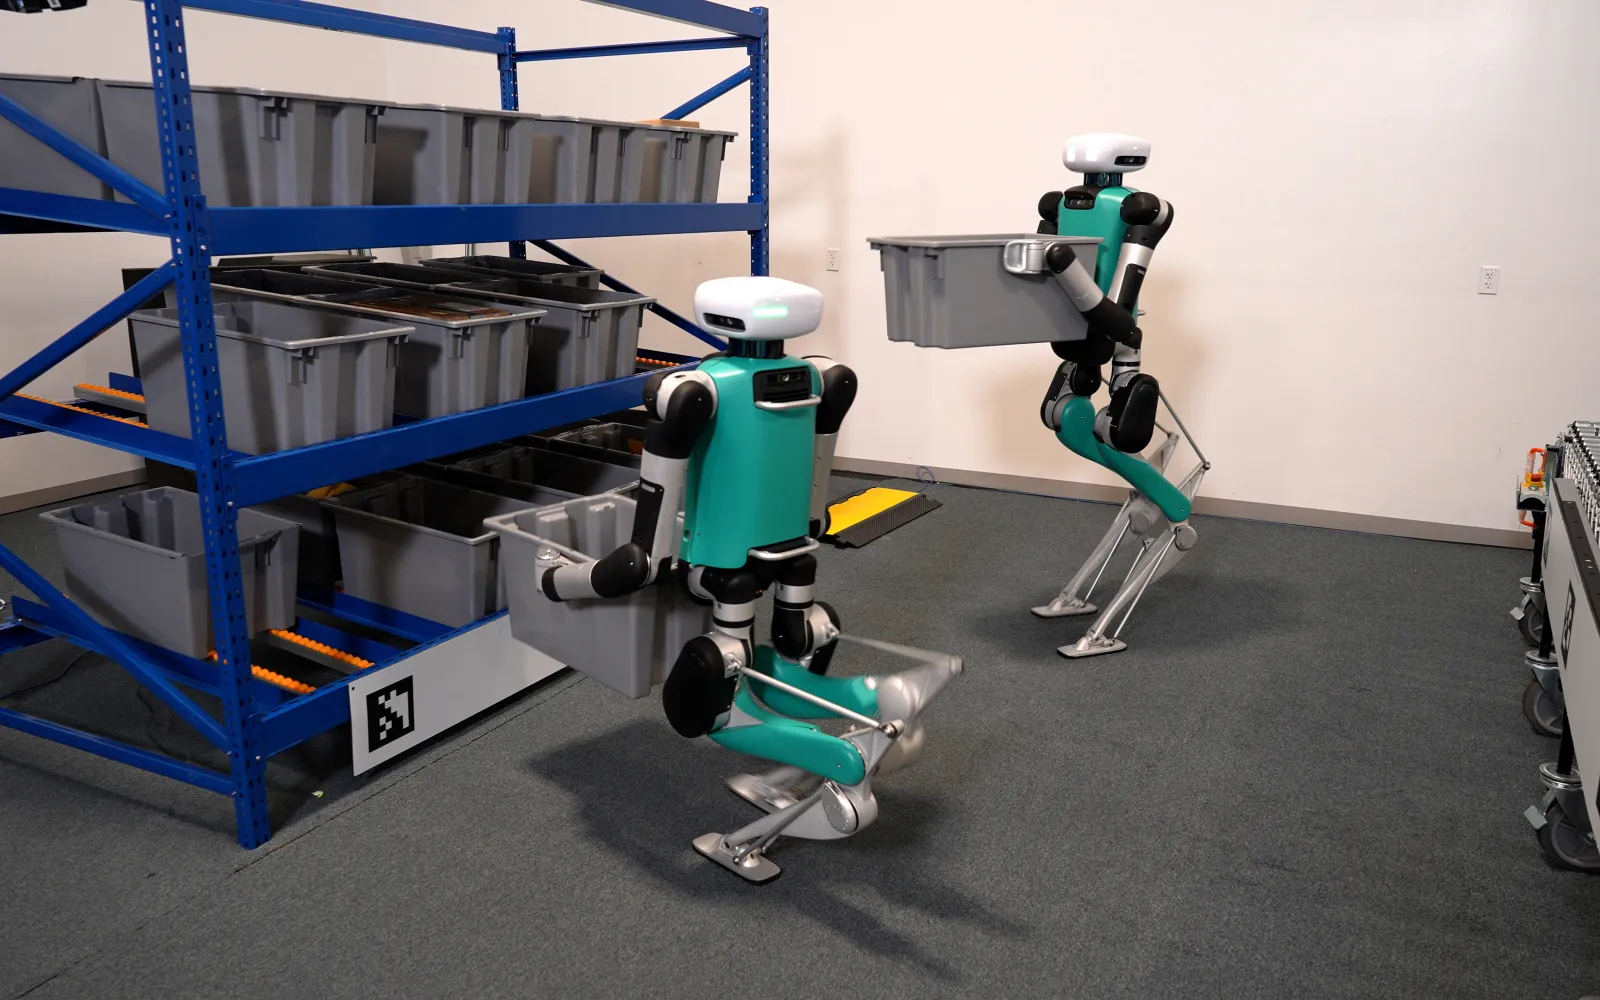 Spanx using 'human centric' Digit robot at Atlanta facility